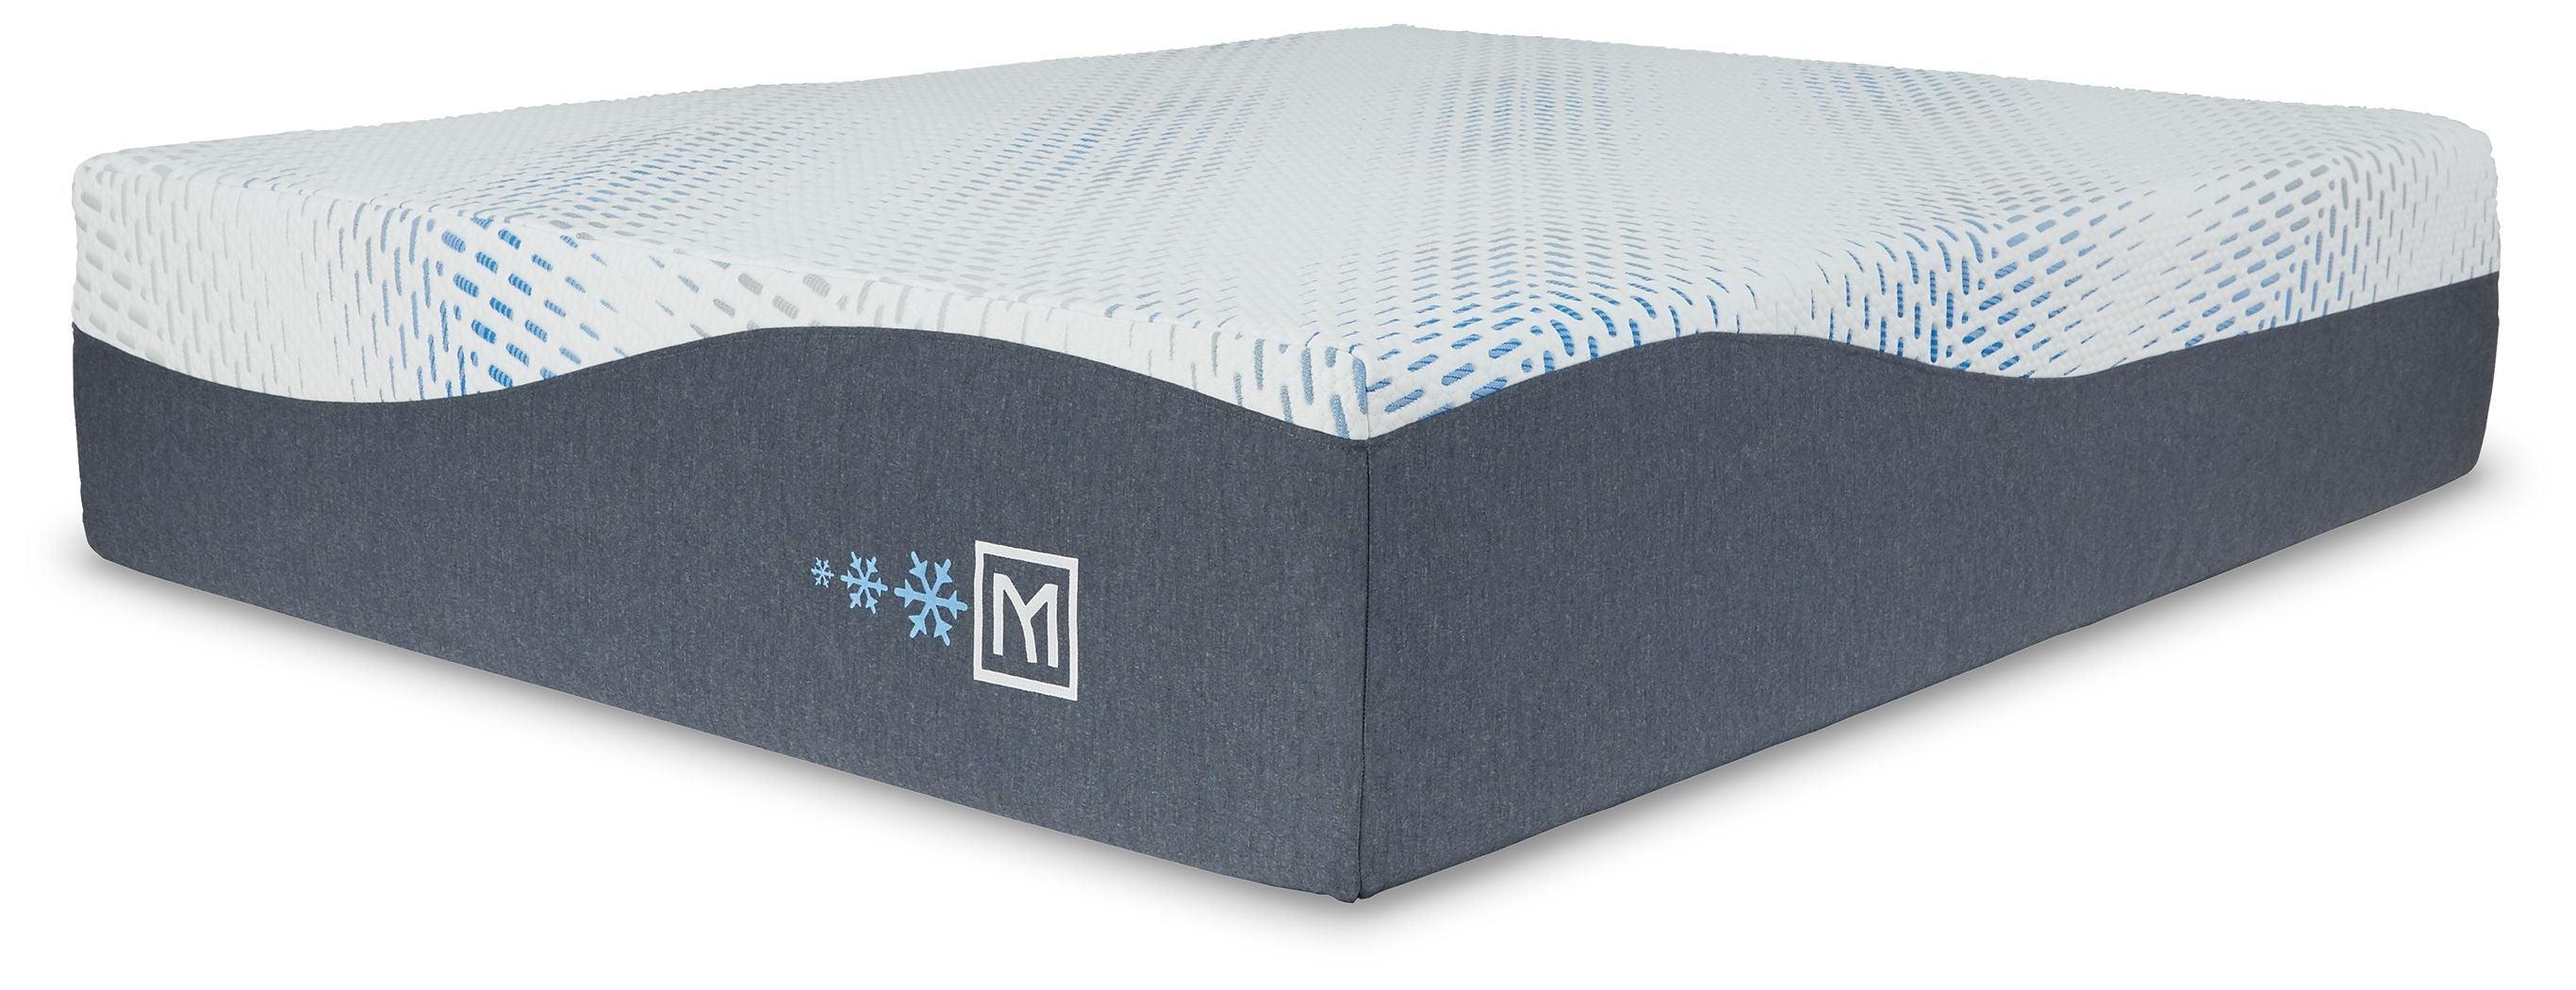 Sierra Sleep® by Ashley - Millennium - Luxury Plush Gel Latex Hybrid Mattress - 5th Avenue Furniture